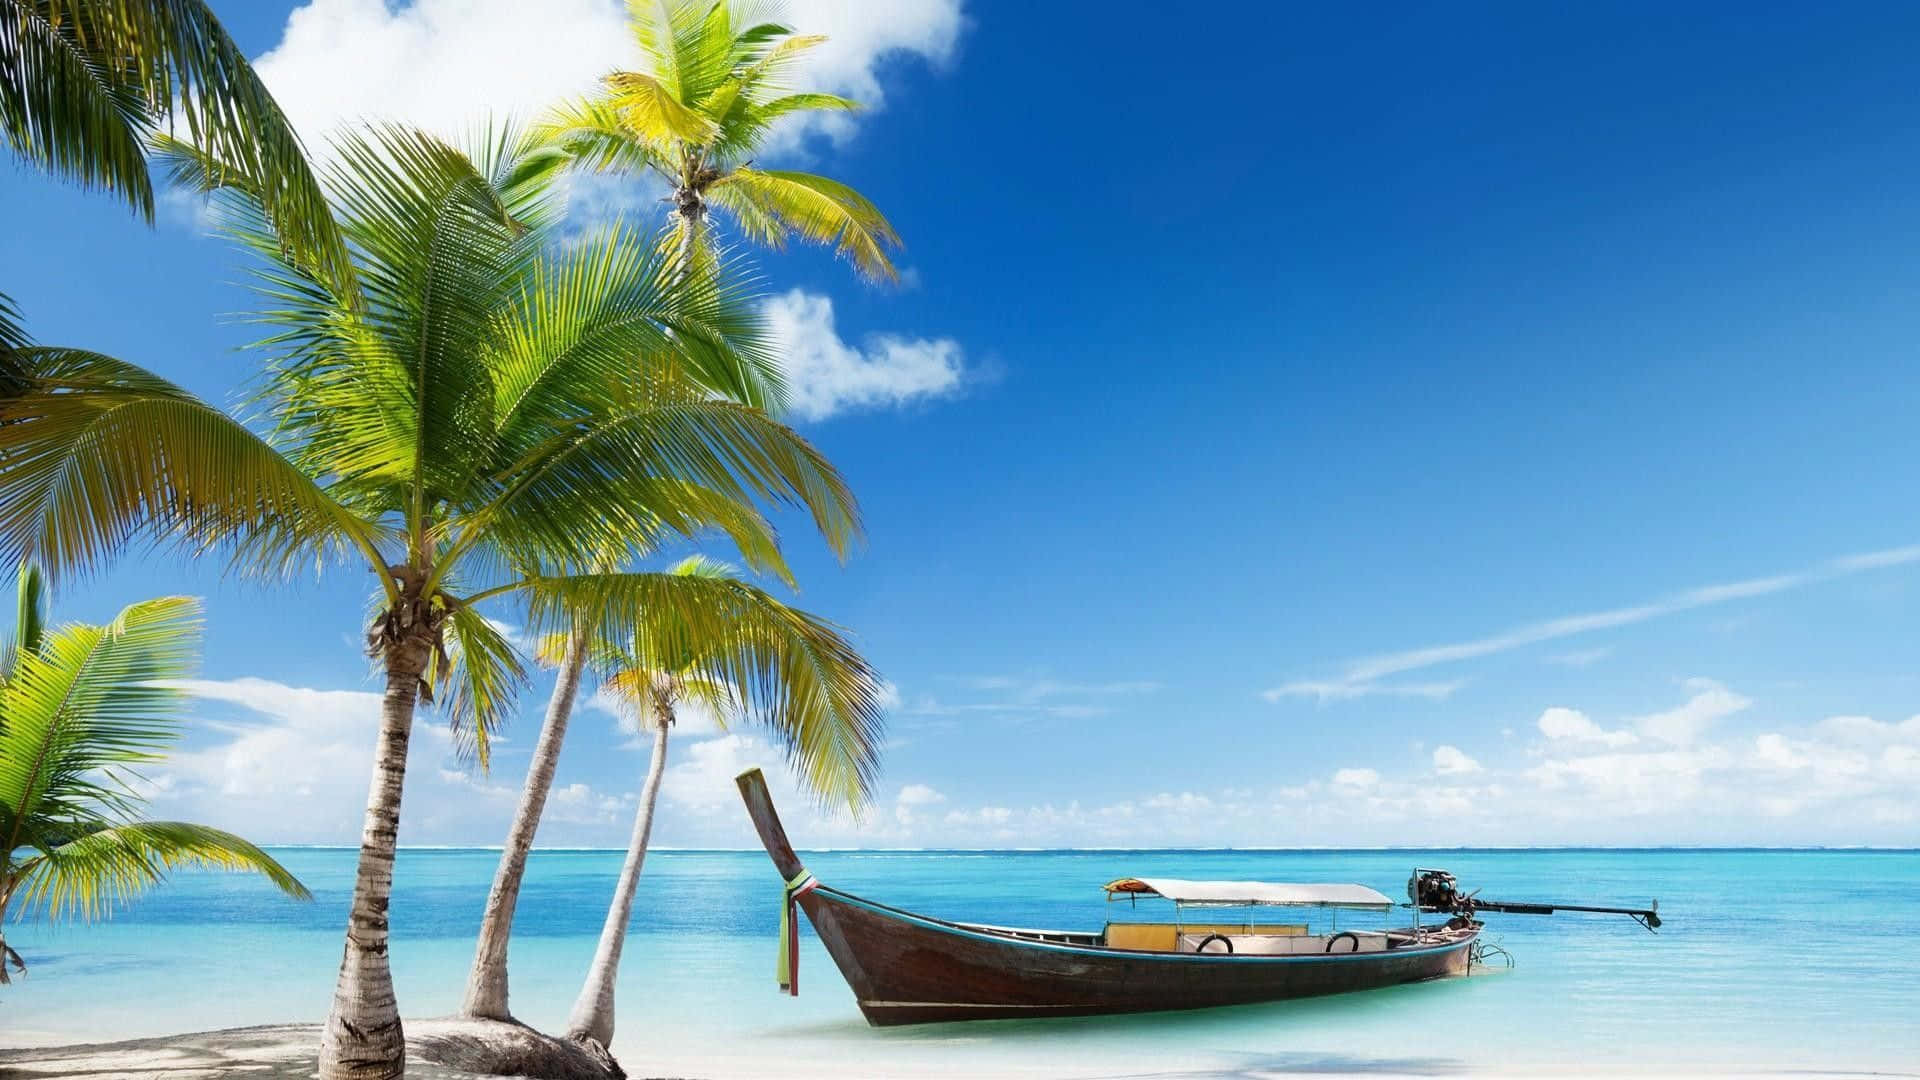 Océano,palmeras Y Barco En La Playa. Fondo de pantalla